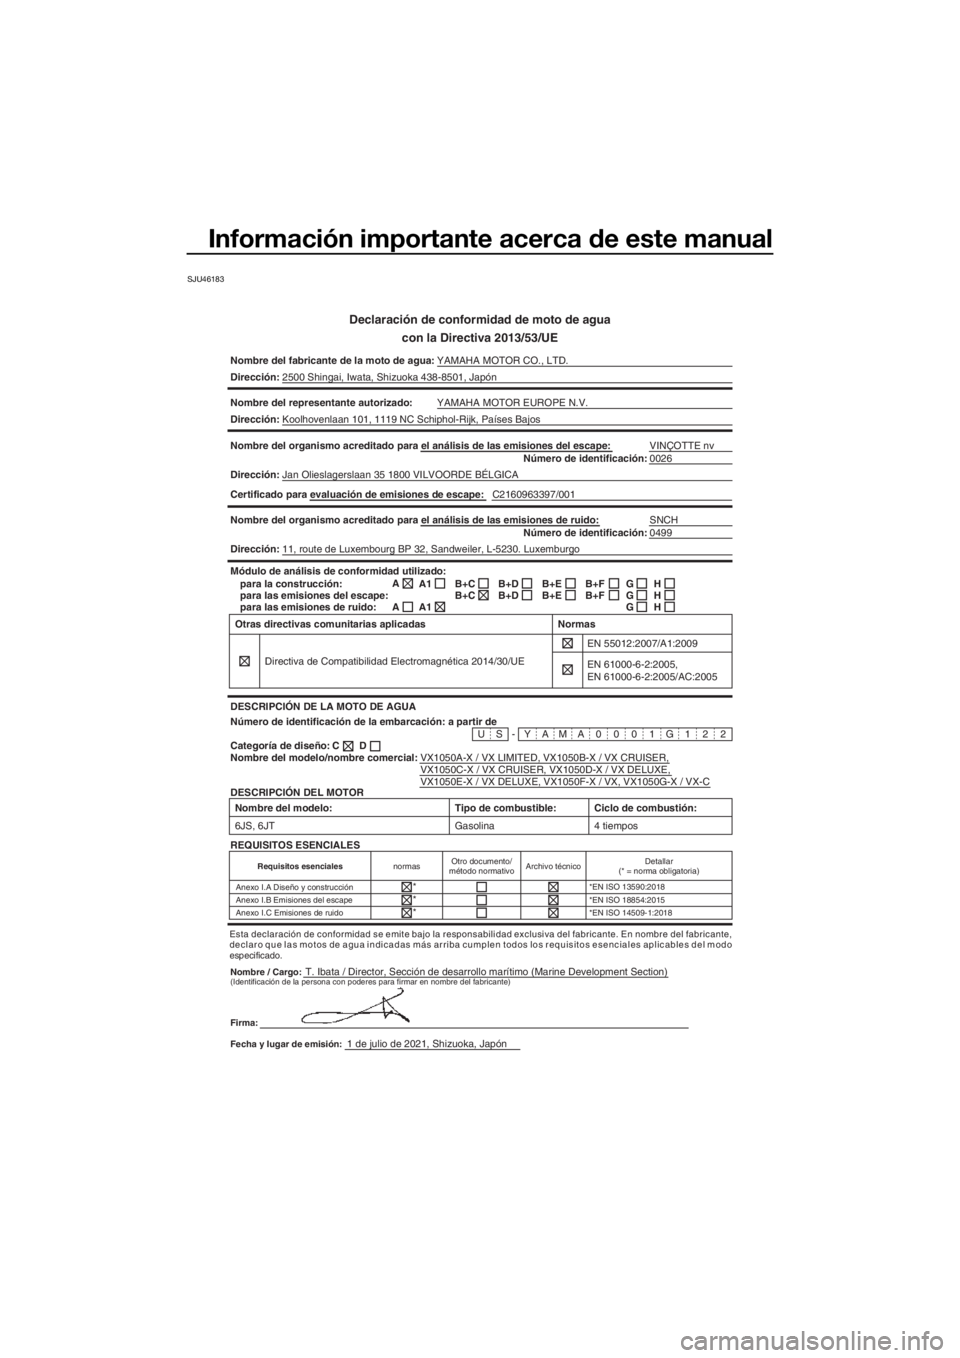 YAMAHA VX LIMITED 2022  Manuale de Empleo (in Spanish) Información importante acerca de este manual
SJU46183
Declaración de conformidad de moto de aguacon la Directiva 2013/53/UE
Nombre del fabricante de la moto de agua: YAMAHA MOTOR CO., LTD.
Direcció